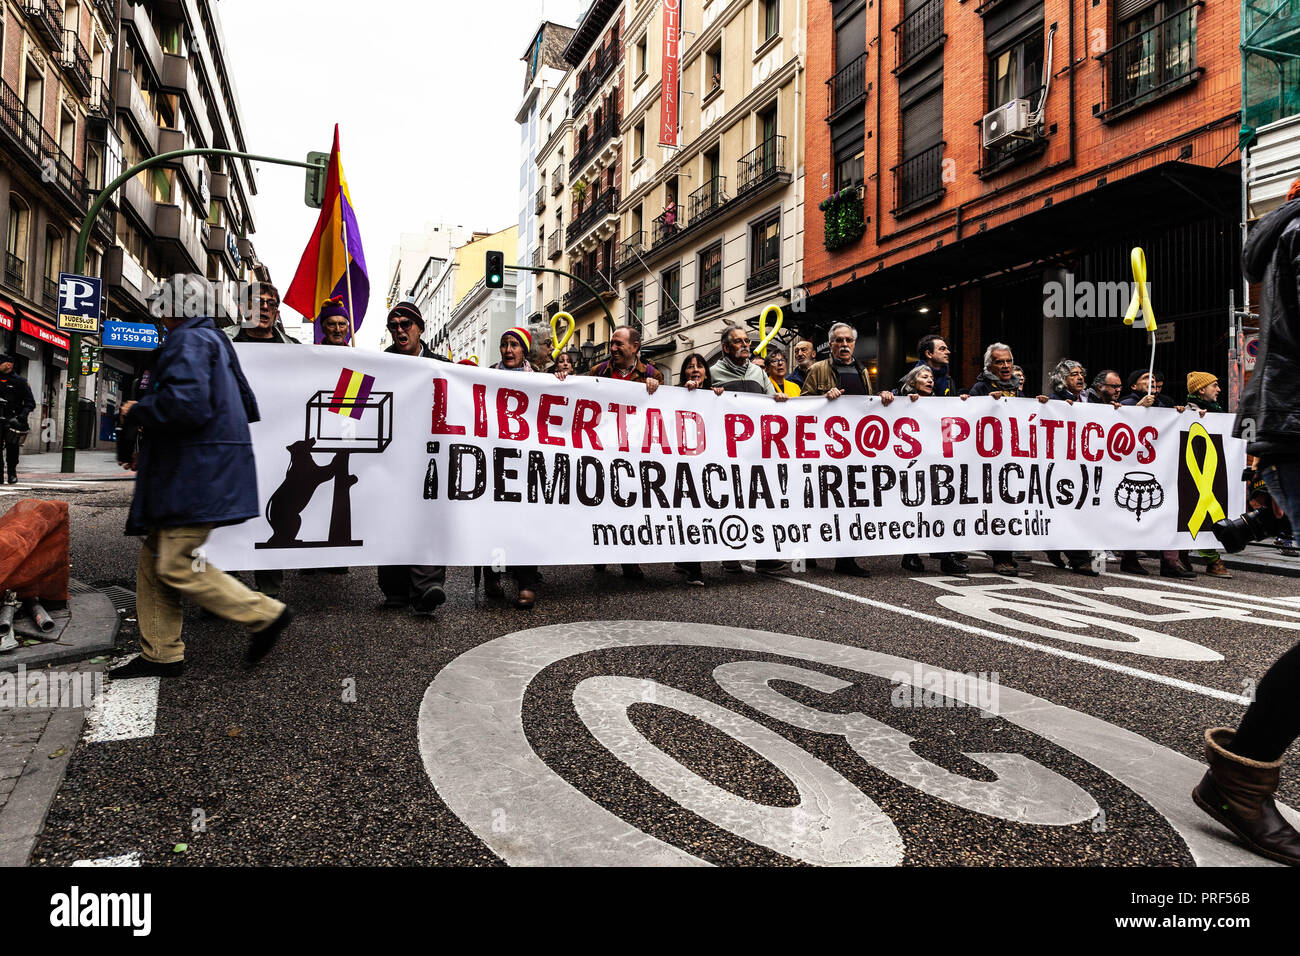 Multidinaria manifestación exigiendo libertad para presos políticos, Gran Vía, Madrid, España. Foto Stock